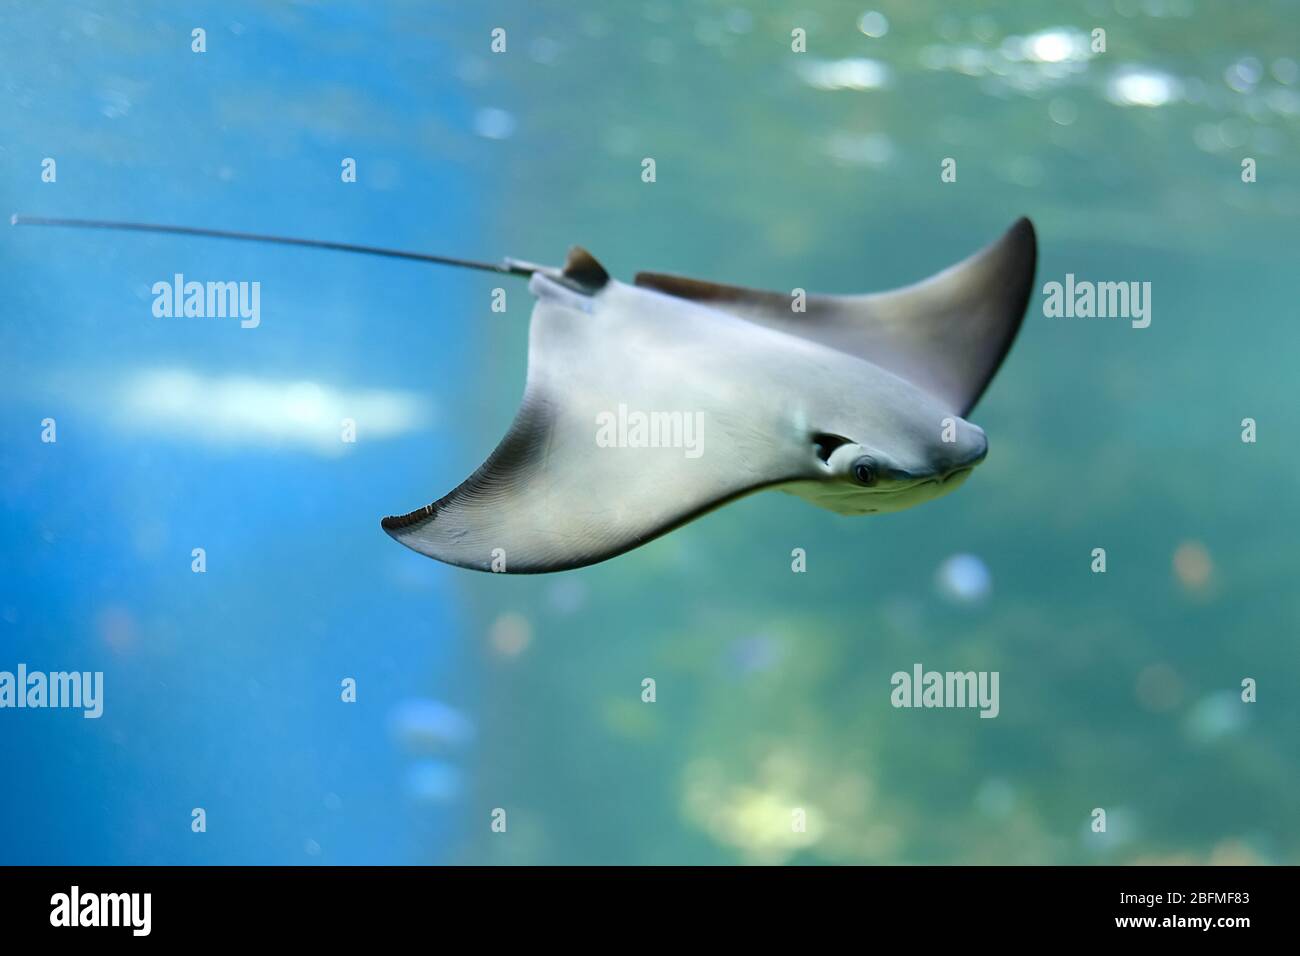 Stingray schwimmt unter blauem Wasser. Nahaufnahme Stingray durch das Aquarienfenster. Stockfoto